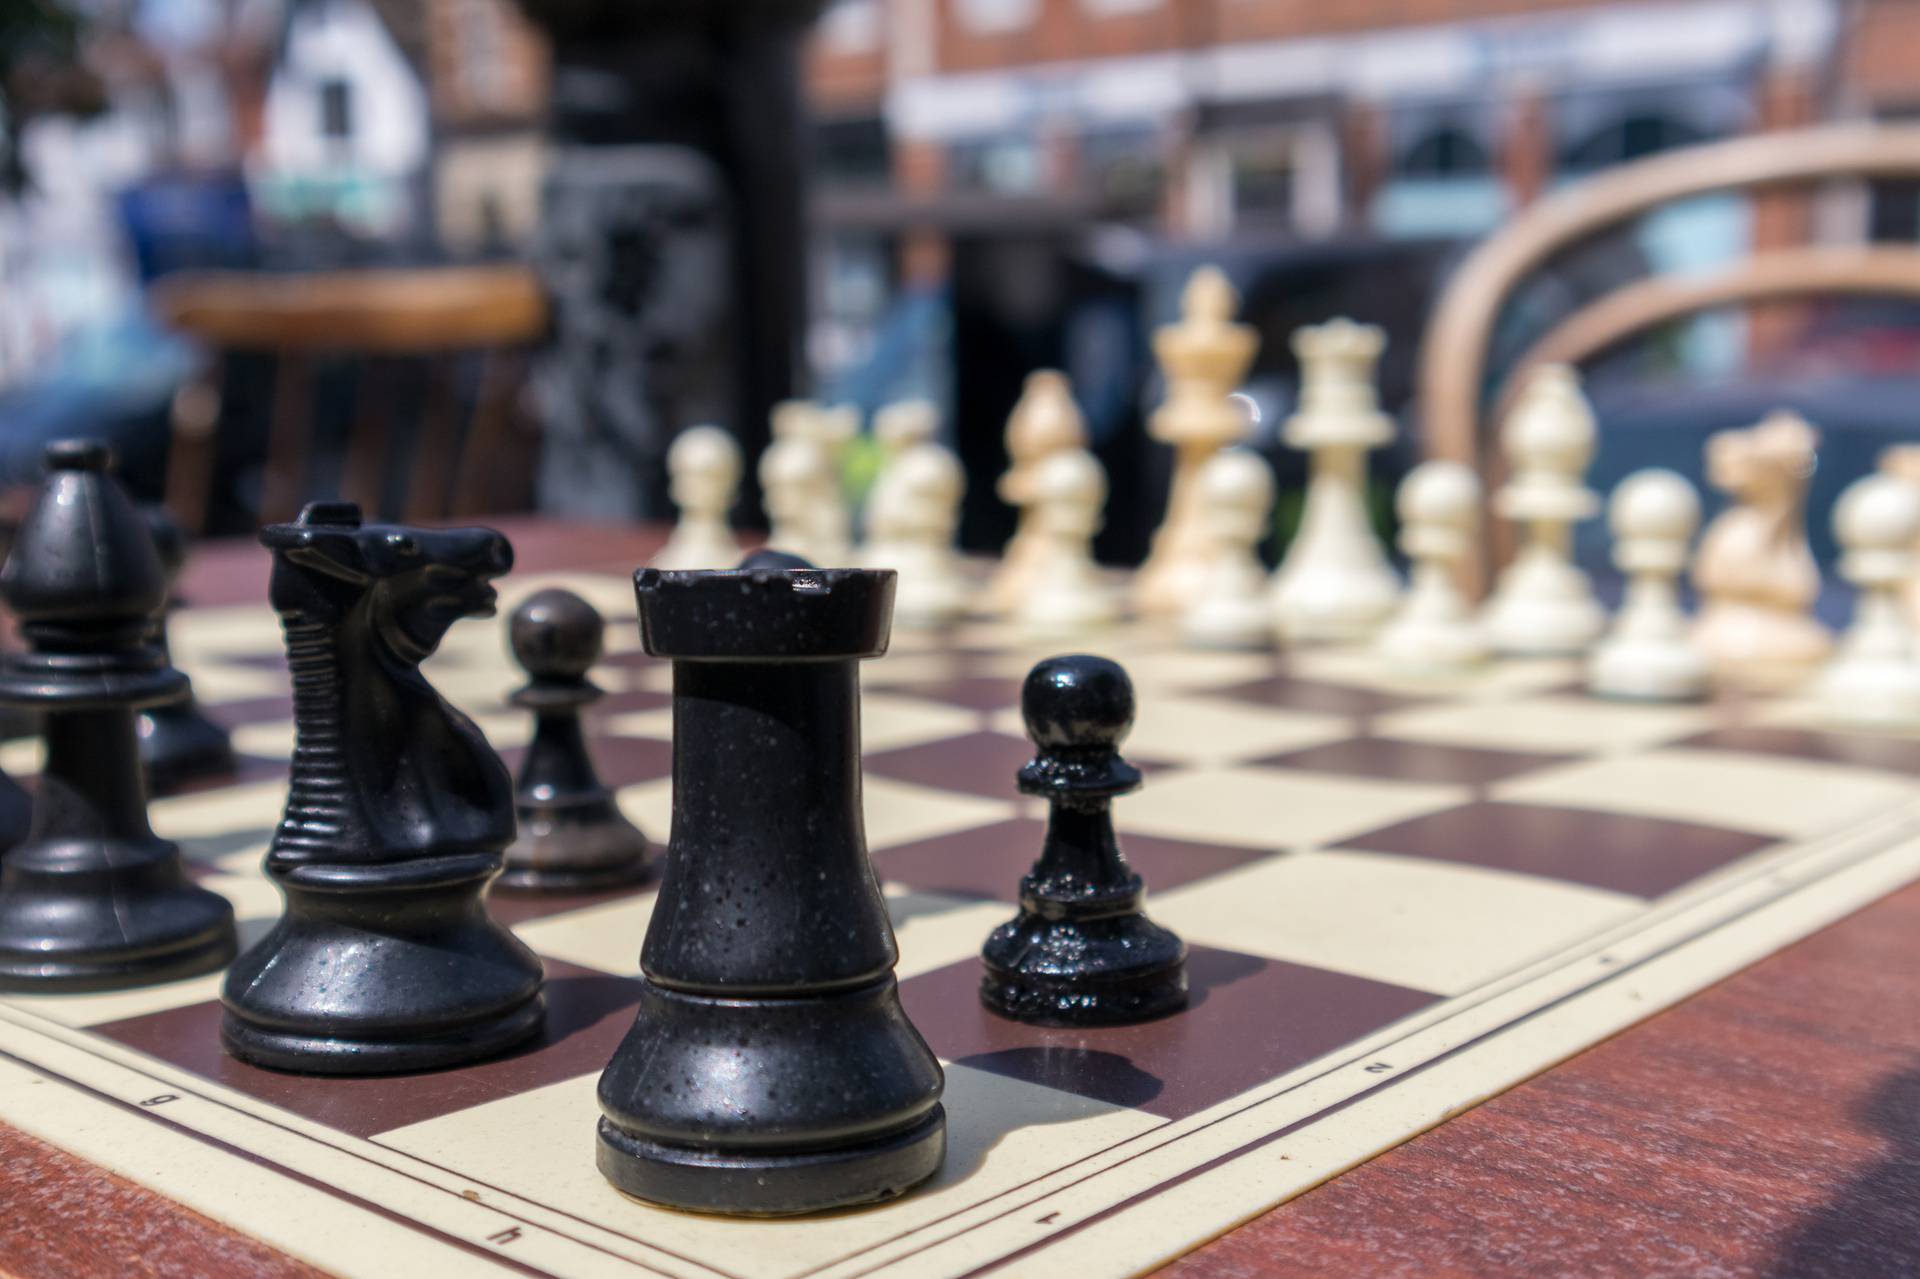 Danas zaigrajte šah i dobro se zabavite u staroj strateškoj igri